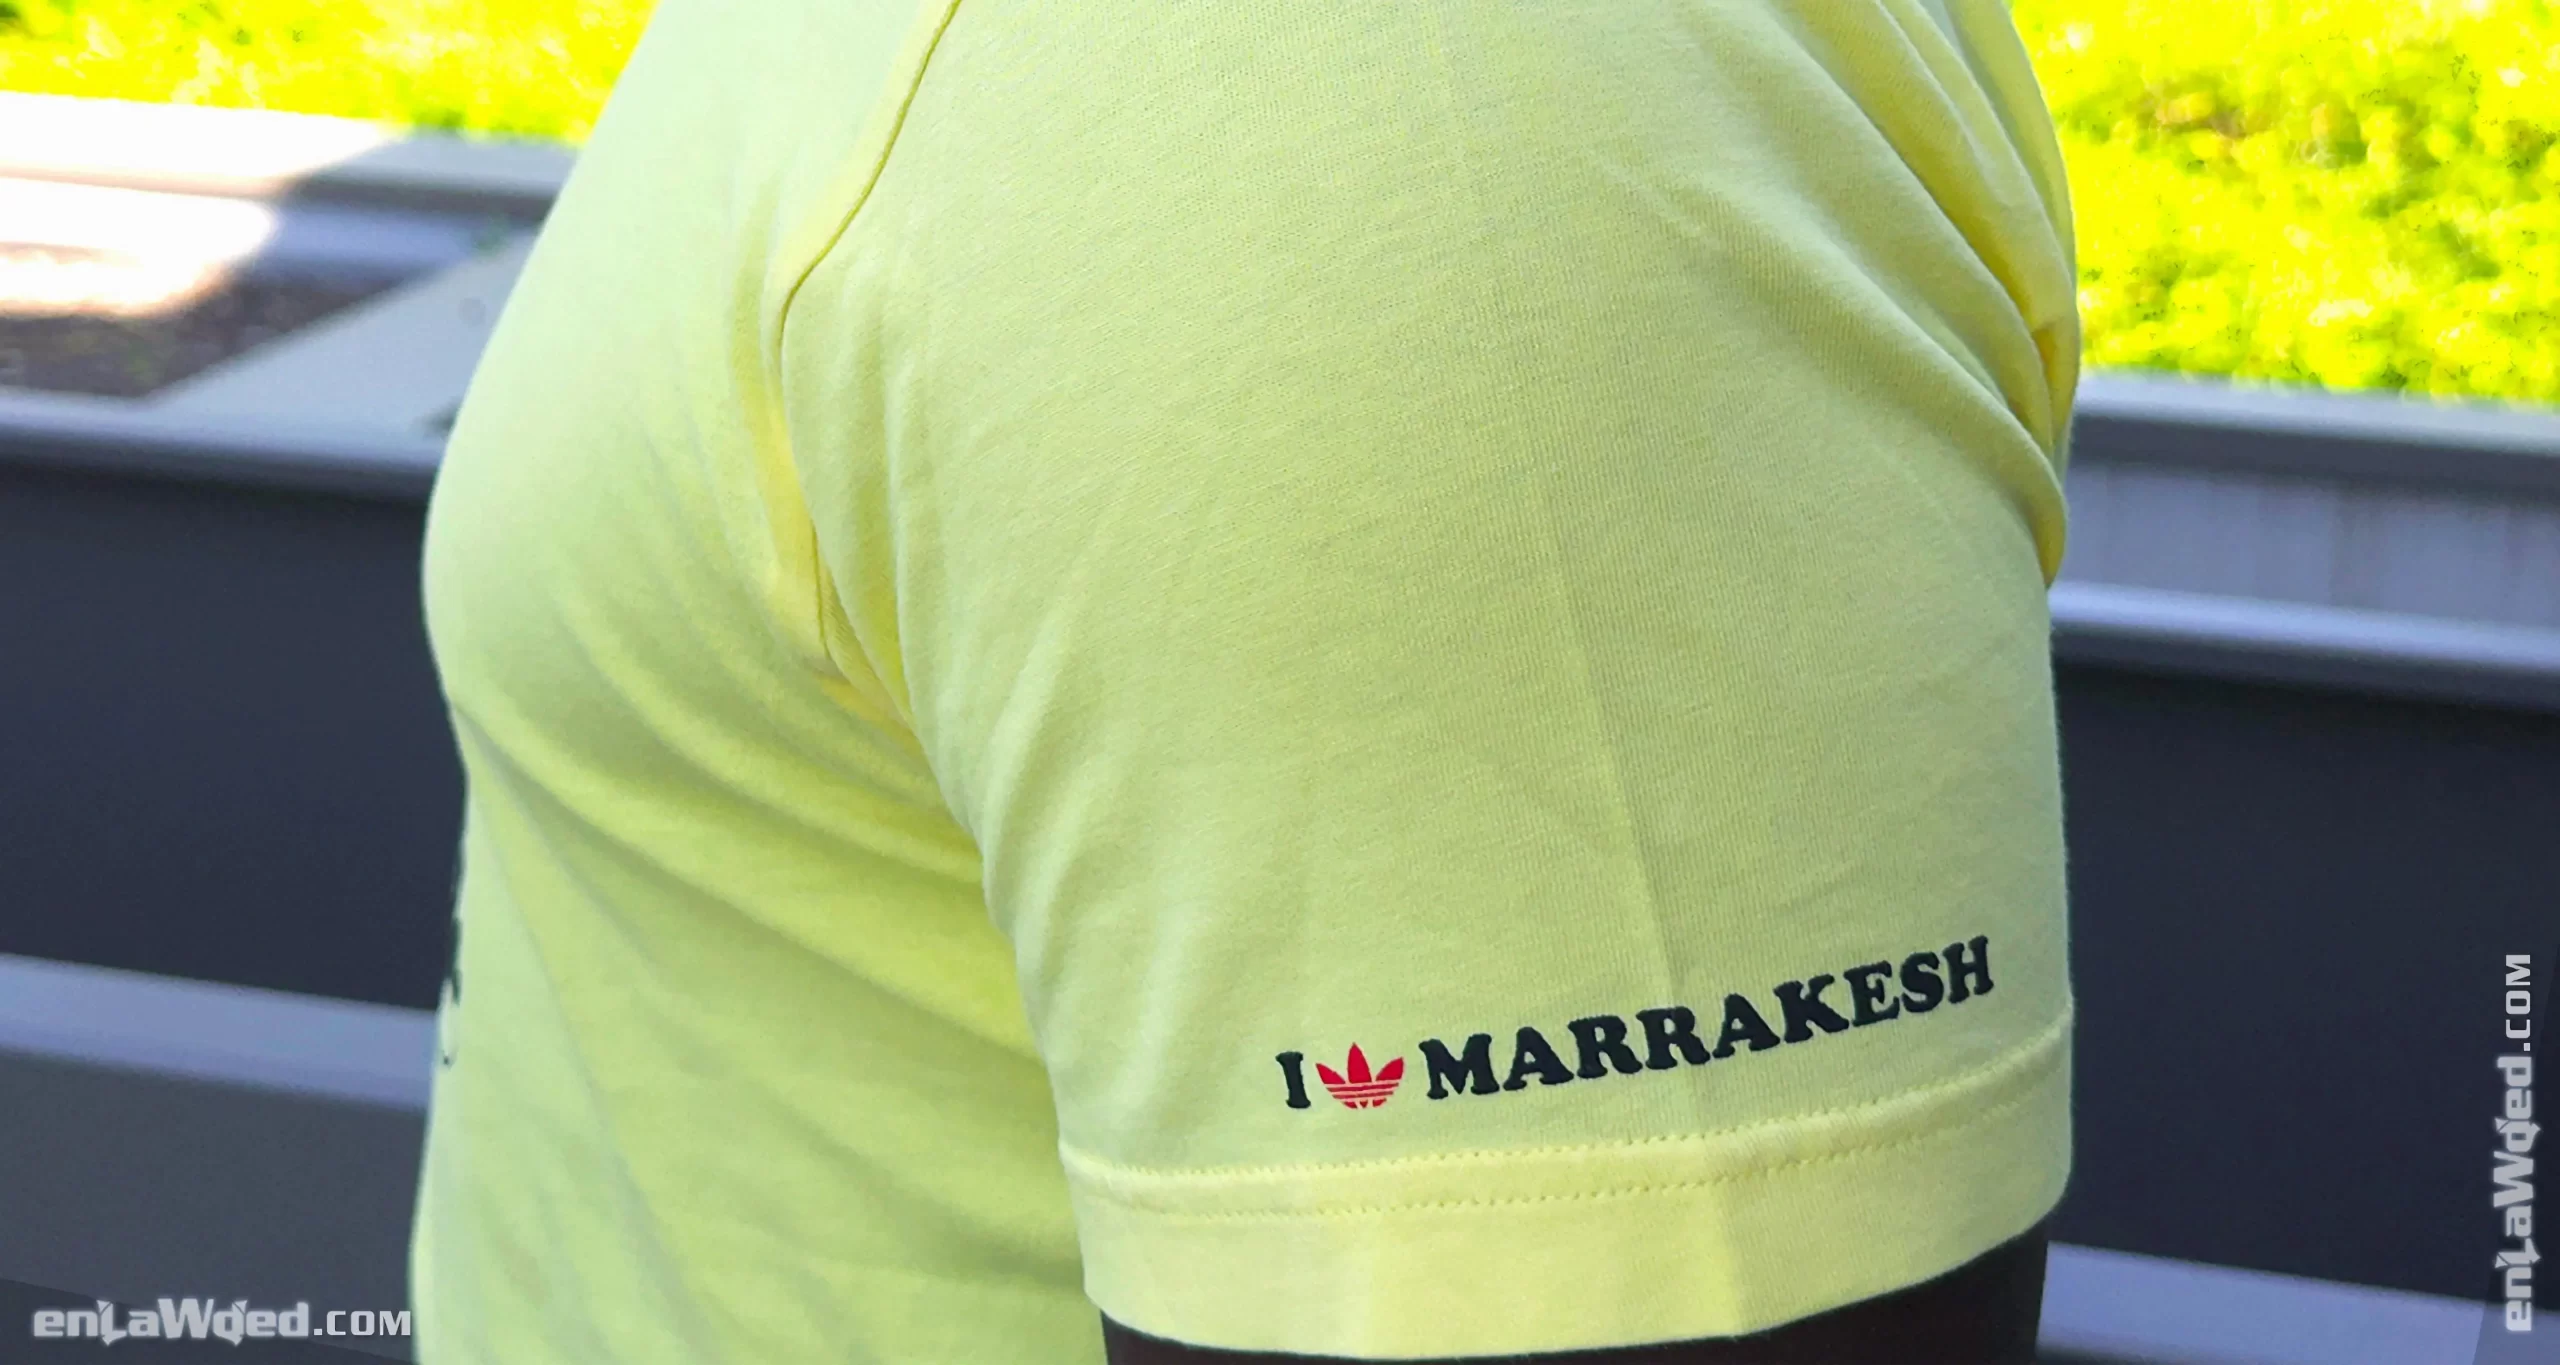 Men’s 2007 Marrakech T-Shirt by Adidas Originals: Light (EnLawded.com file #lmc5nijltzuna91v7jd)